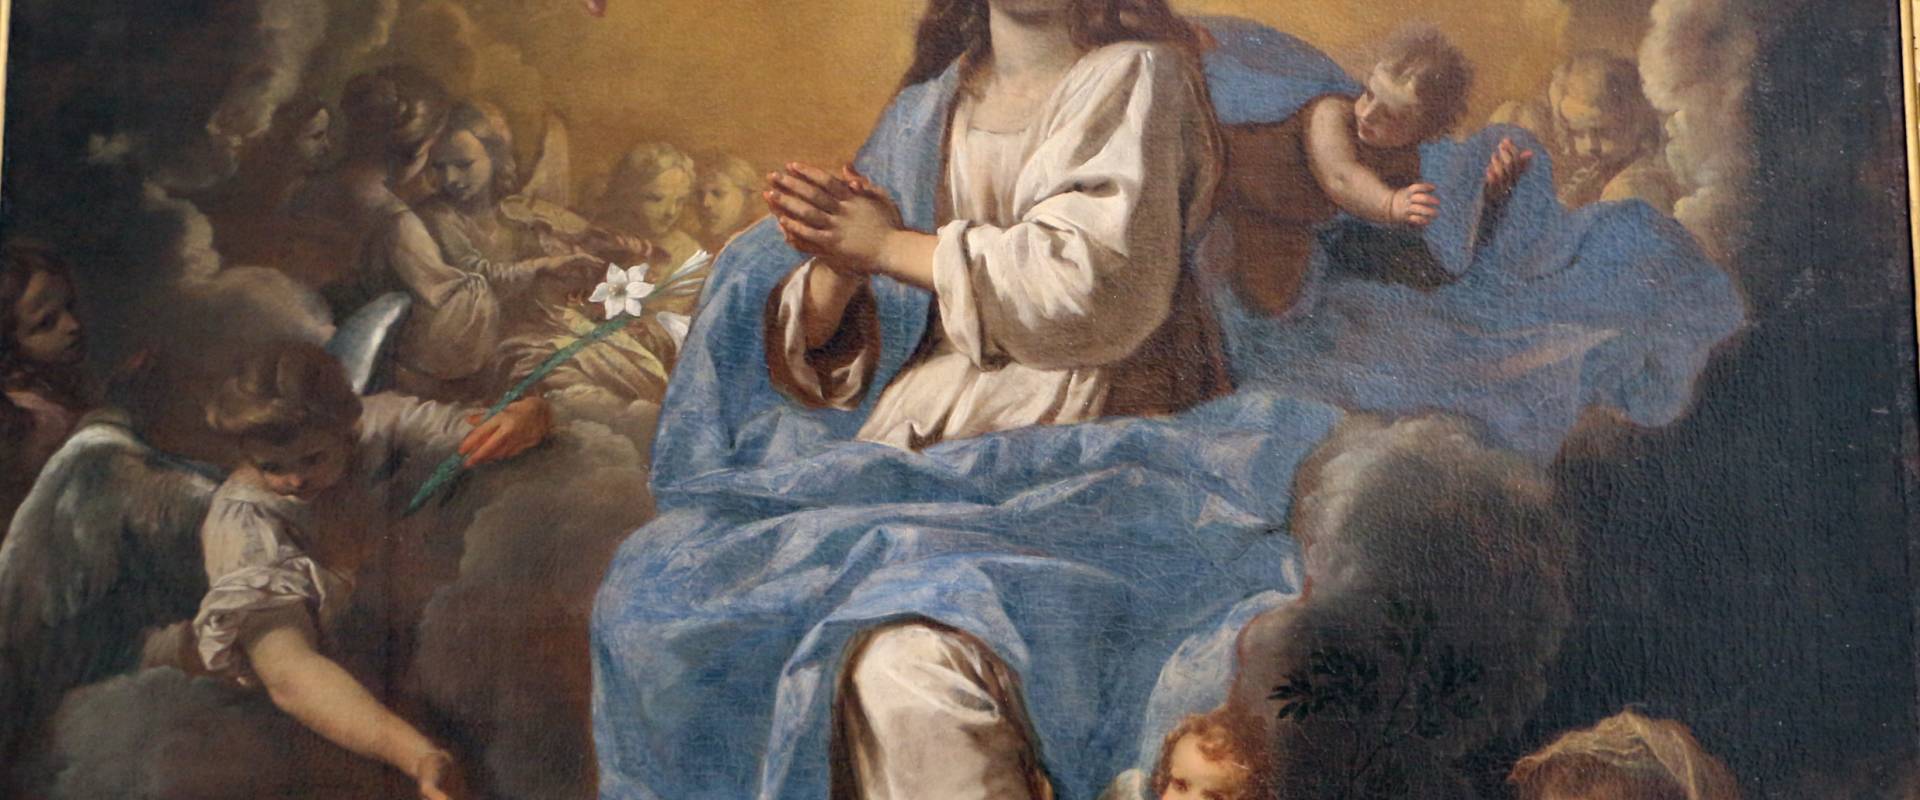 Simone cantarini, madonna in gloria tra santi, 1632-34 ca., 02 foto di Sailko